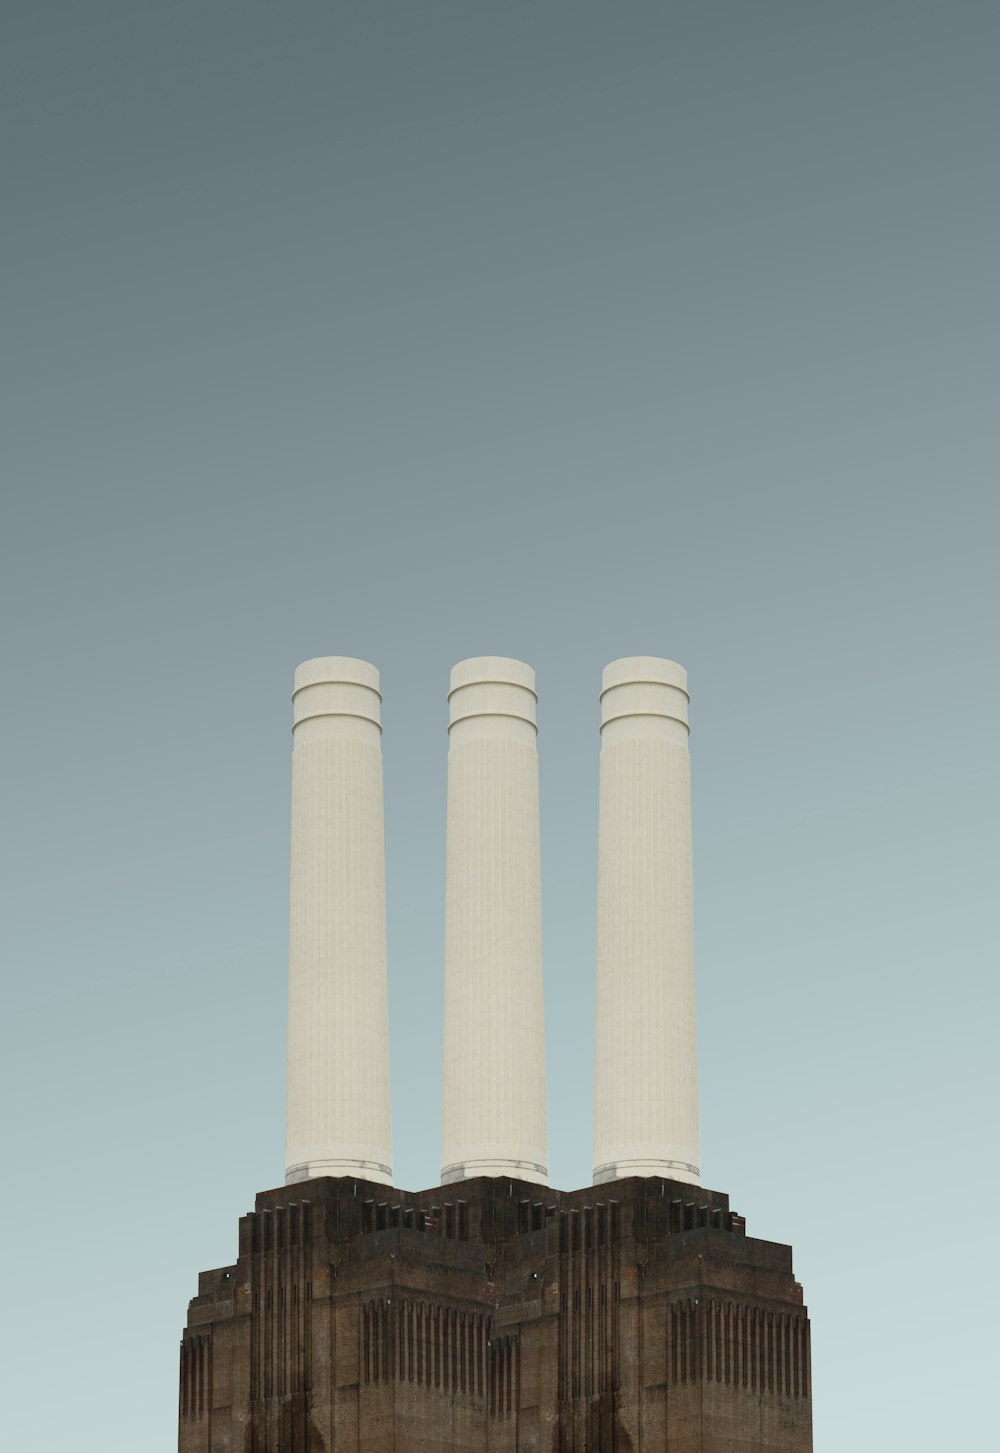 photo of three white pillars